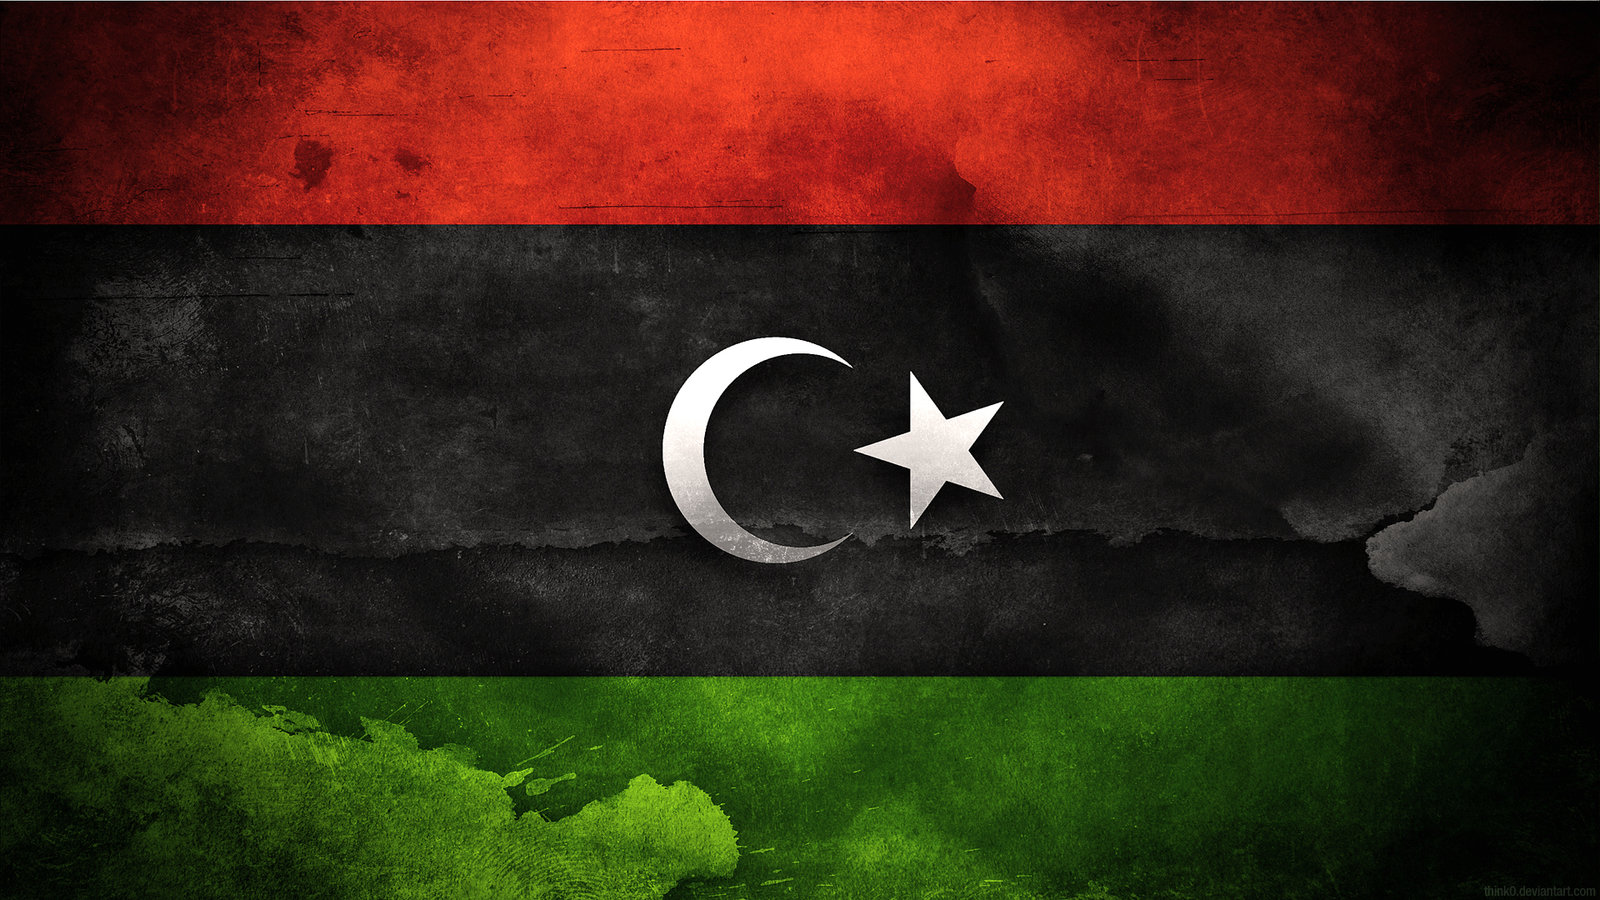 LE ELEZIONI IN LIBIA, TRA CRITICITA’ E POSSIBILI RINVII